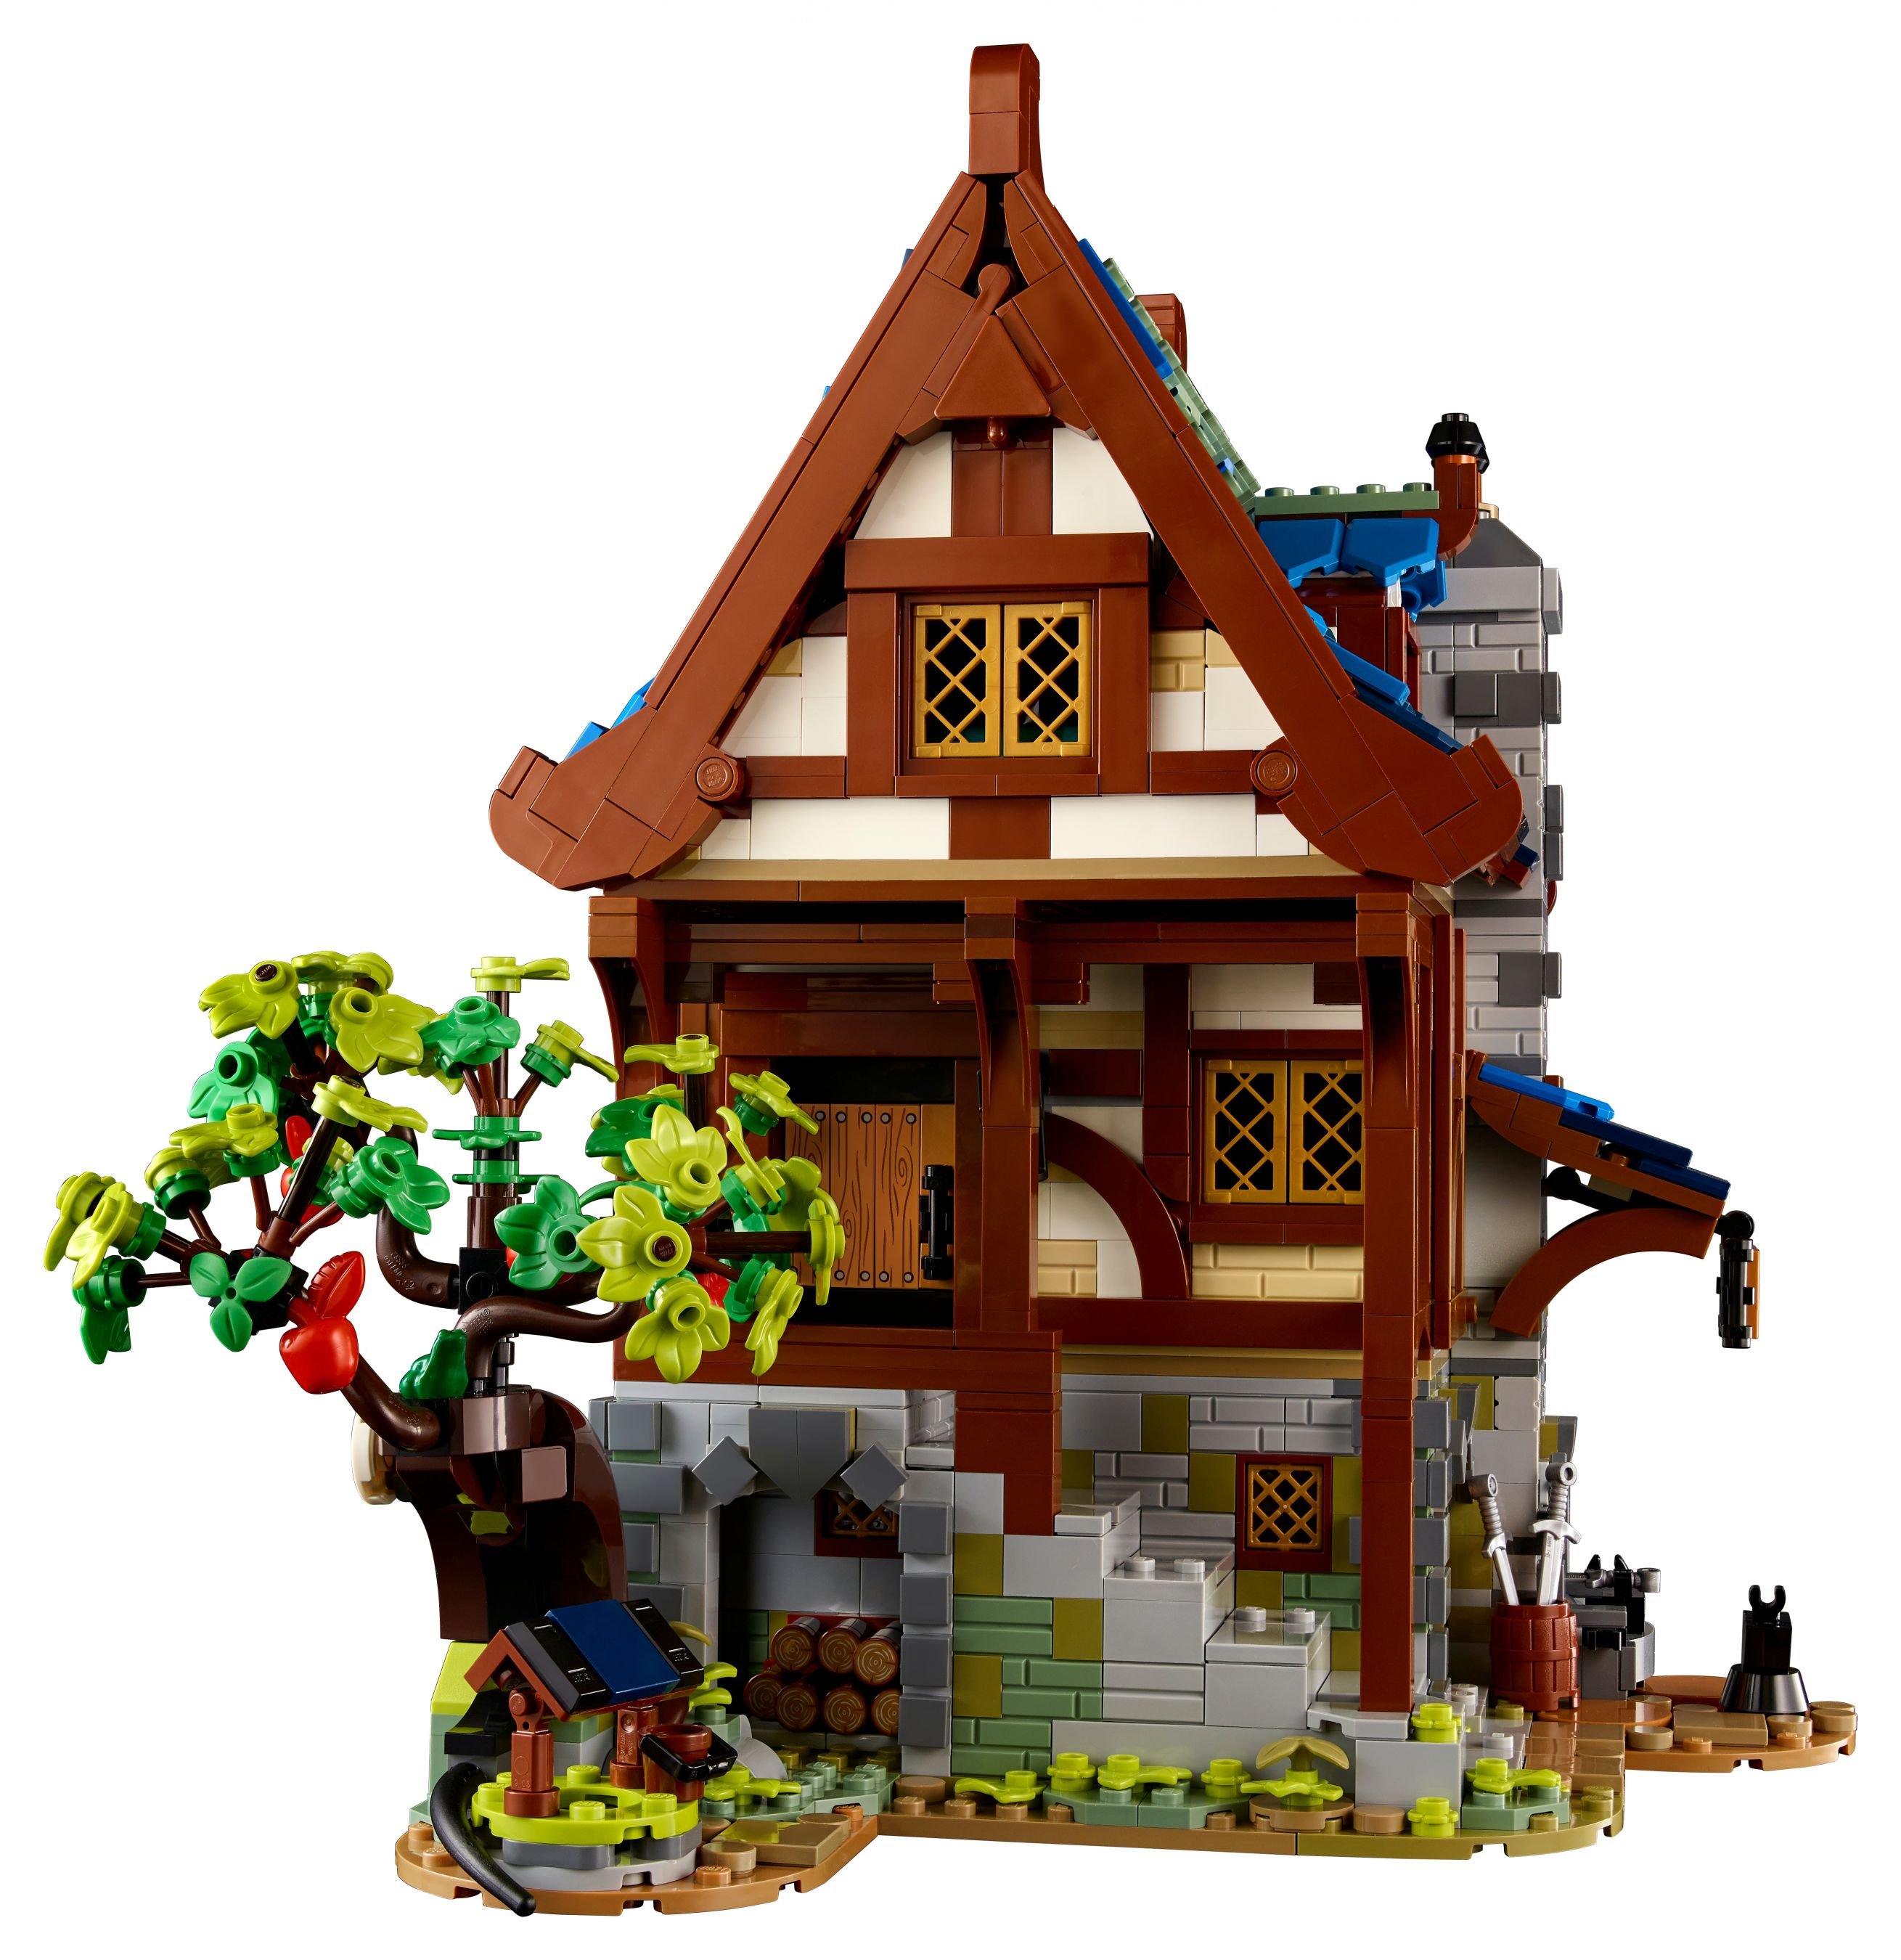 LEGO Ideas 21325 Mittelalterliche Schmiede LEGO_21325_alt4.jpg